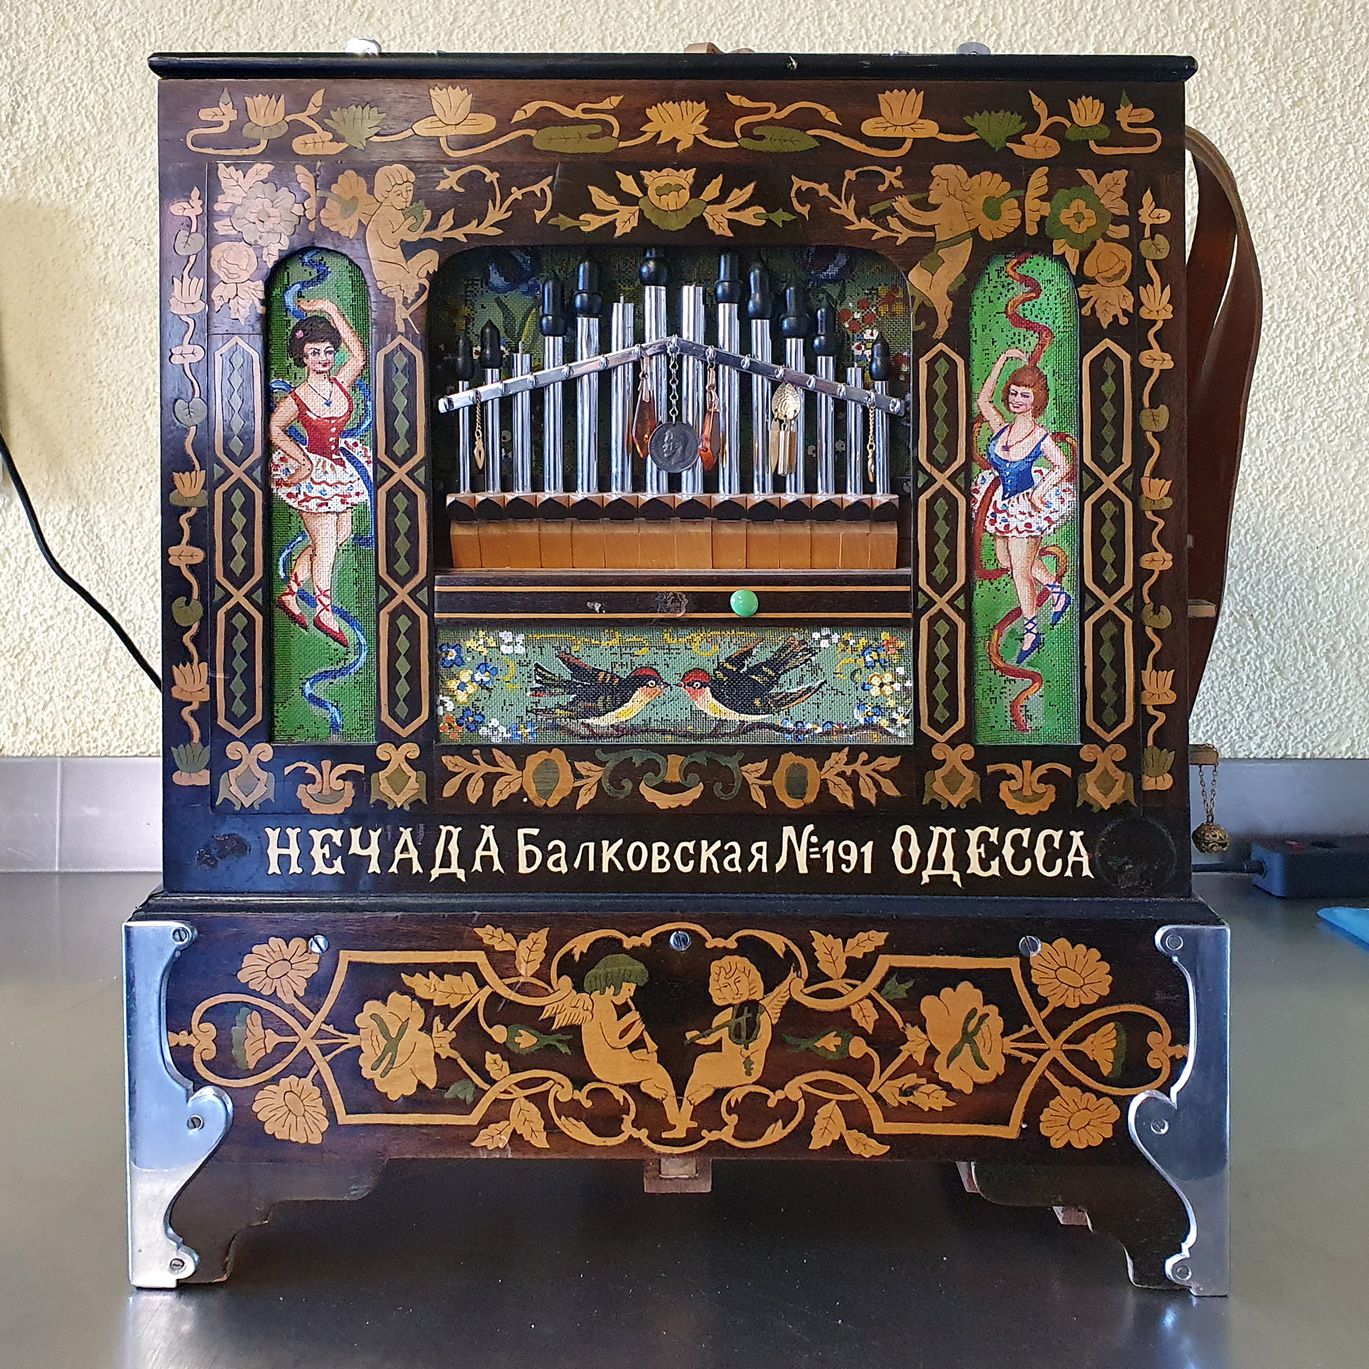 Street Organ from I.Nechada factory (Odessa) around 1910 
一架来自革命前的俄罗斯的美妙管风琴。著名的制&hellip;